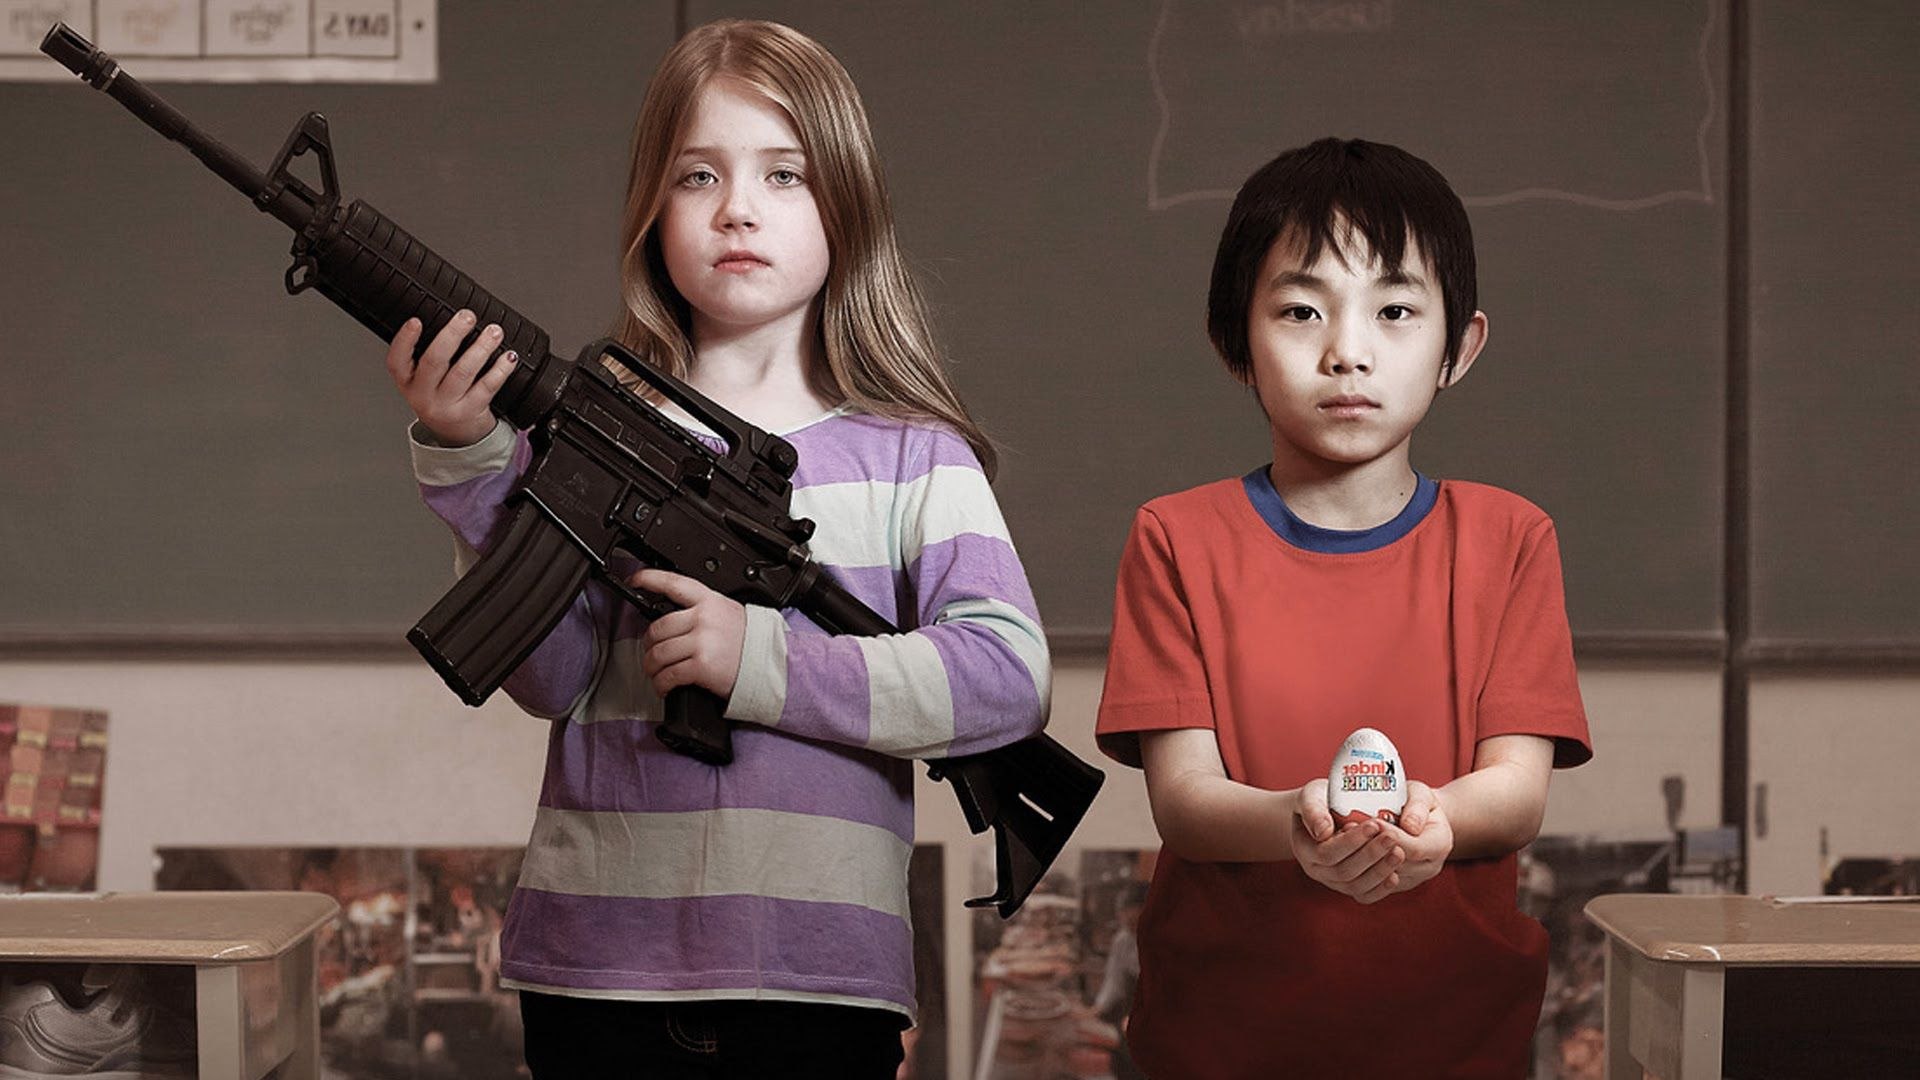 Le choix de Marie - Un fusil commercialisé aux États-Unis pour enfants -  Vidéo Dailymotion